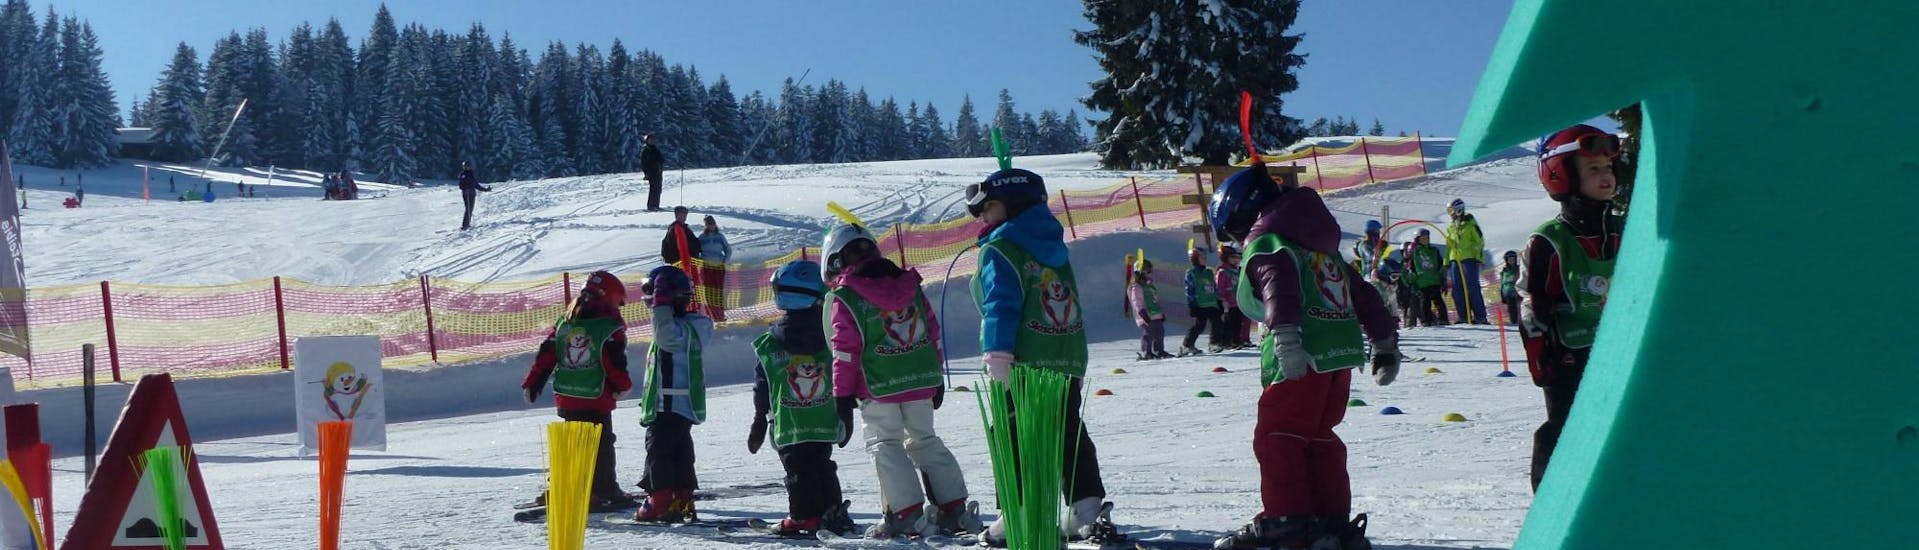 Im Kinderland der Skischule Steibis machen die Teilnehmer am Kinder Skikurs "Zimis Schneeabenteuer" (2.5-4 Jahre) ihre ersten Erfahrungen auf Skiern.